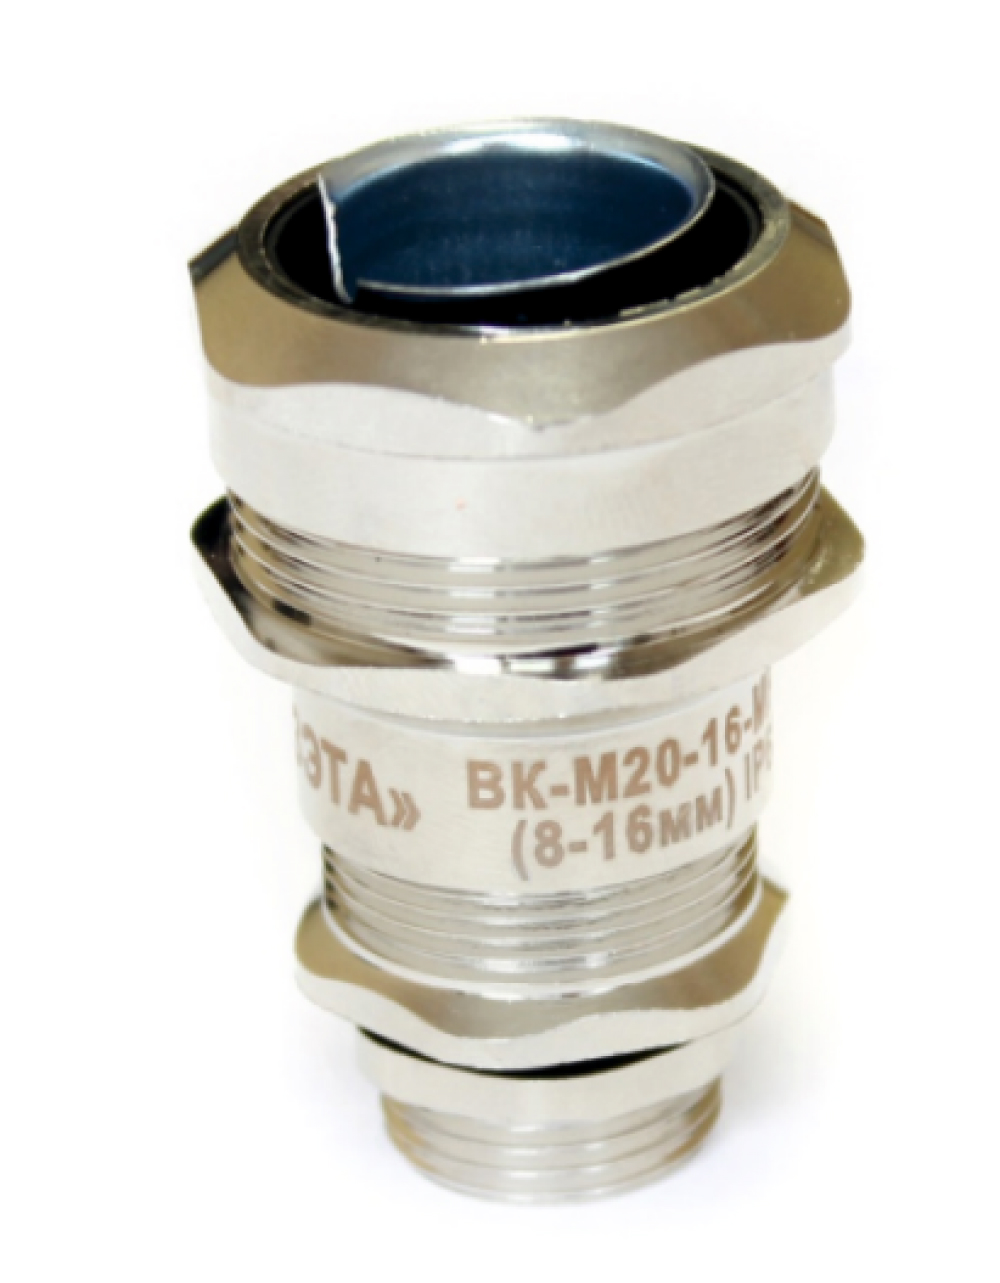 Ввод кабельный Гофроматик ВК-М-МР кабель 8-16 мм, резьба М20, корпус - латунь, уплотнение - диафрагма